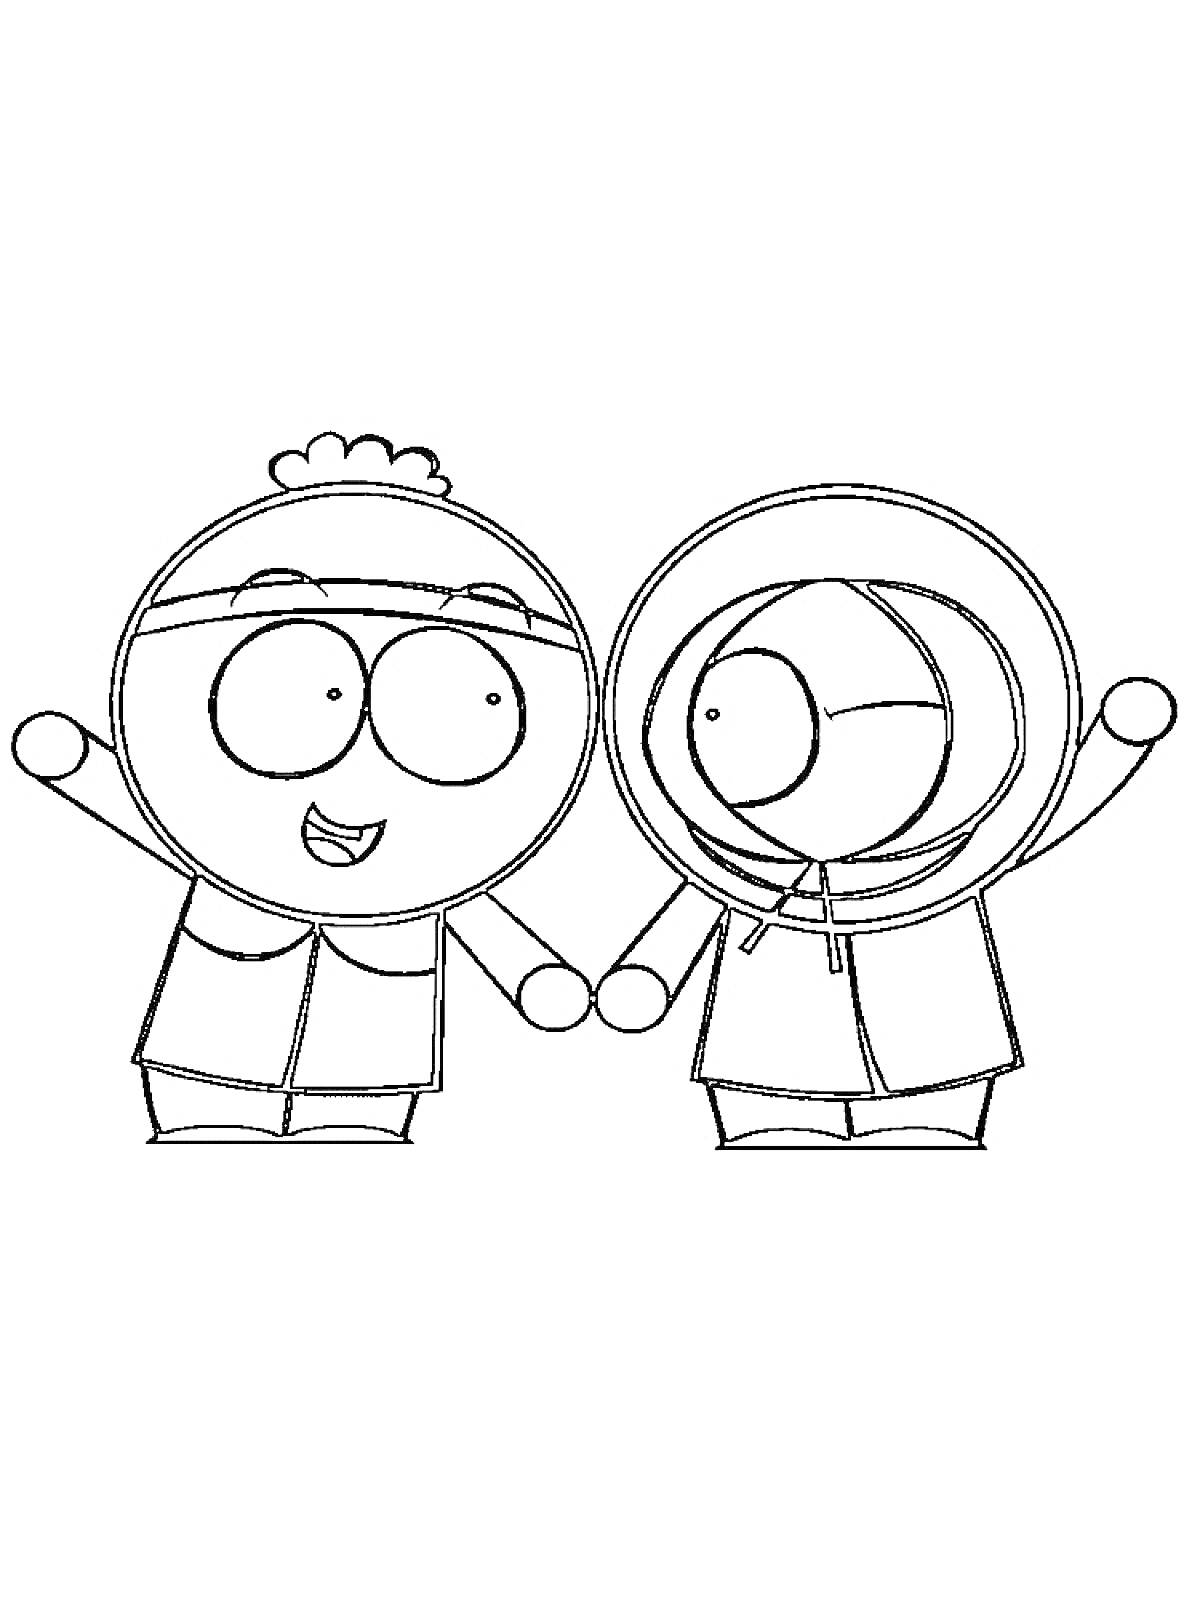 Два персонажа Южного Парка, стоящие вместе и держащиеся за руки